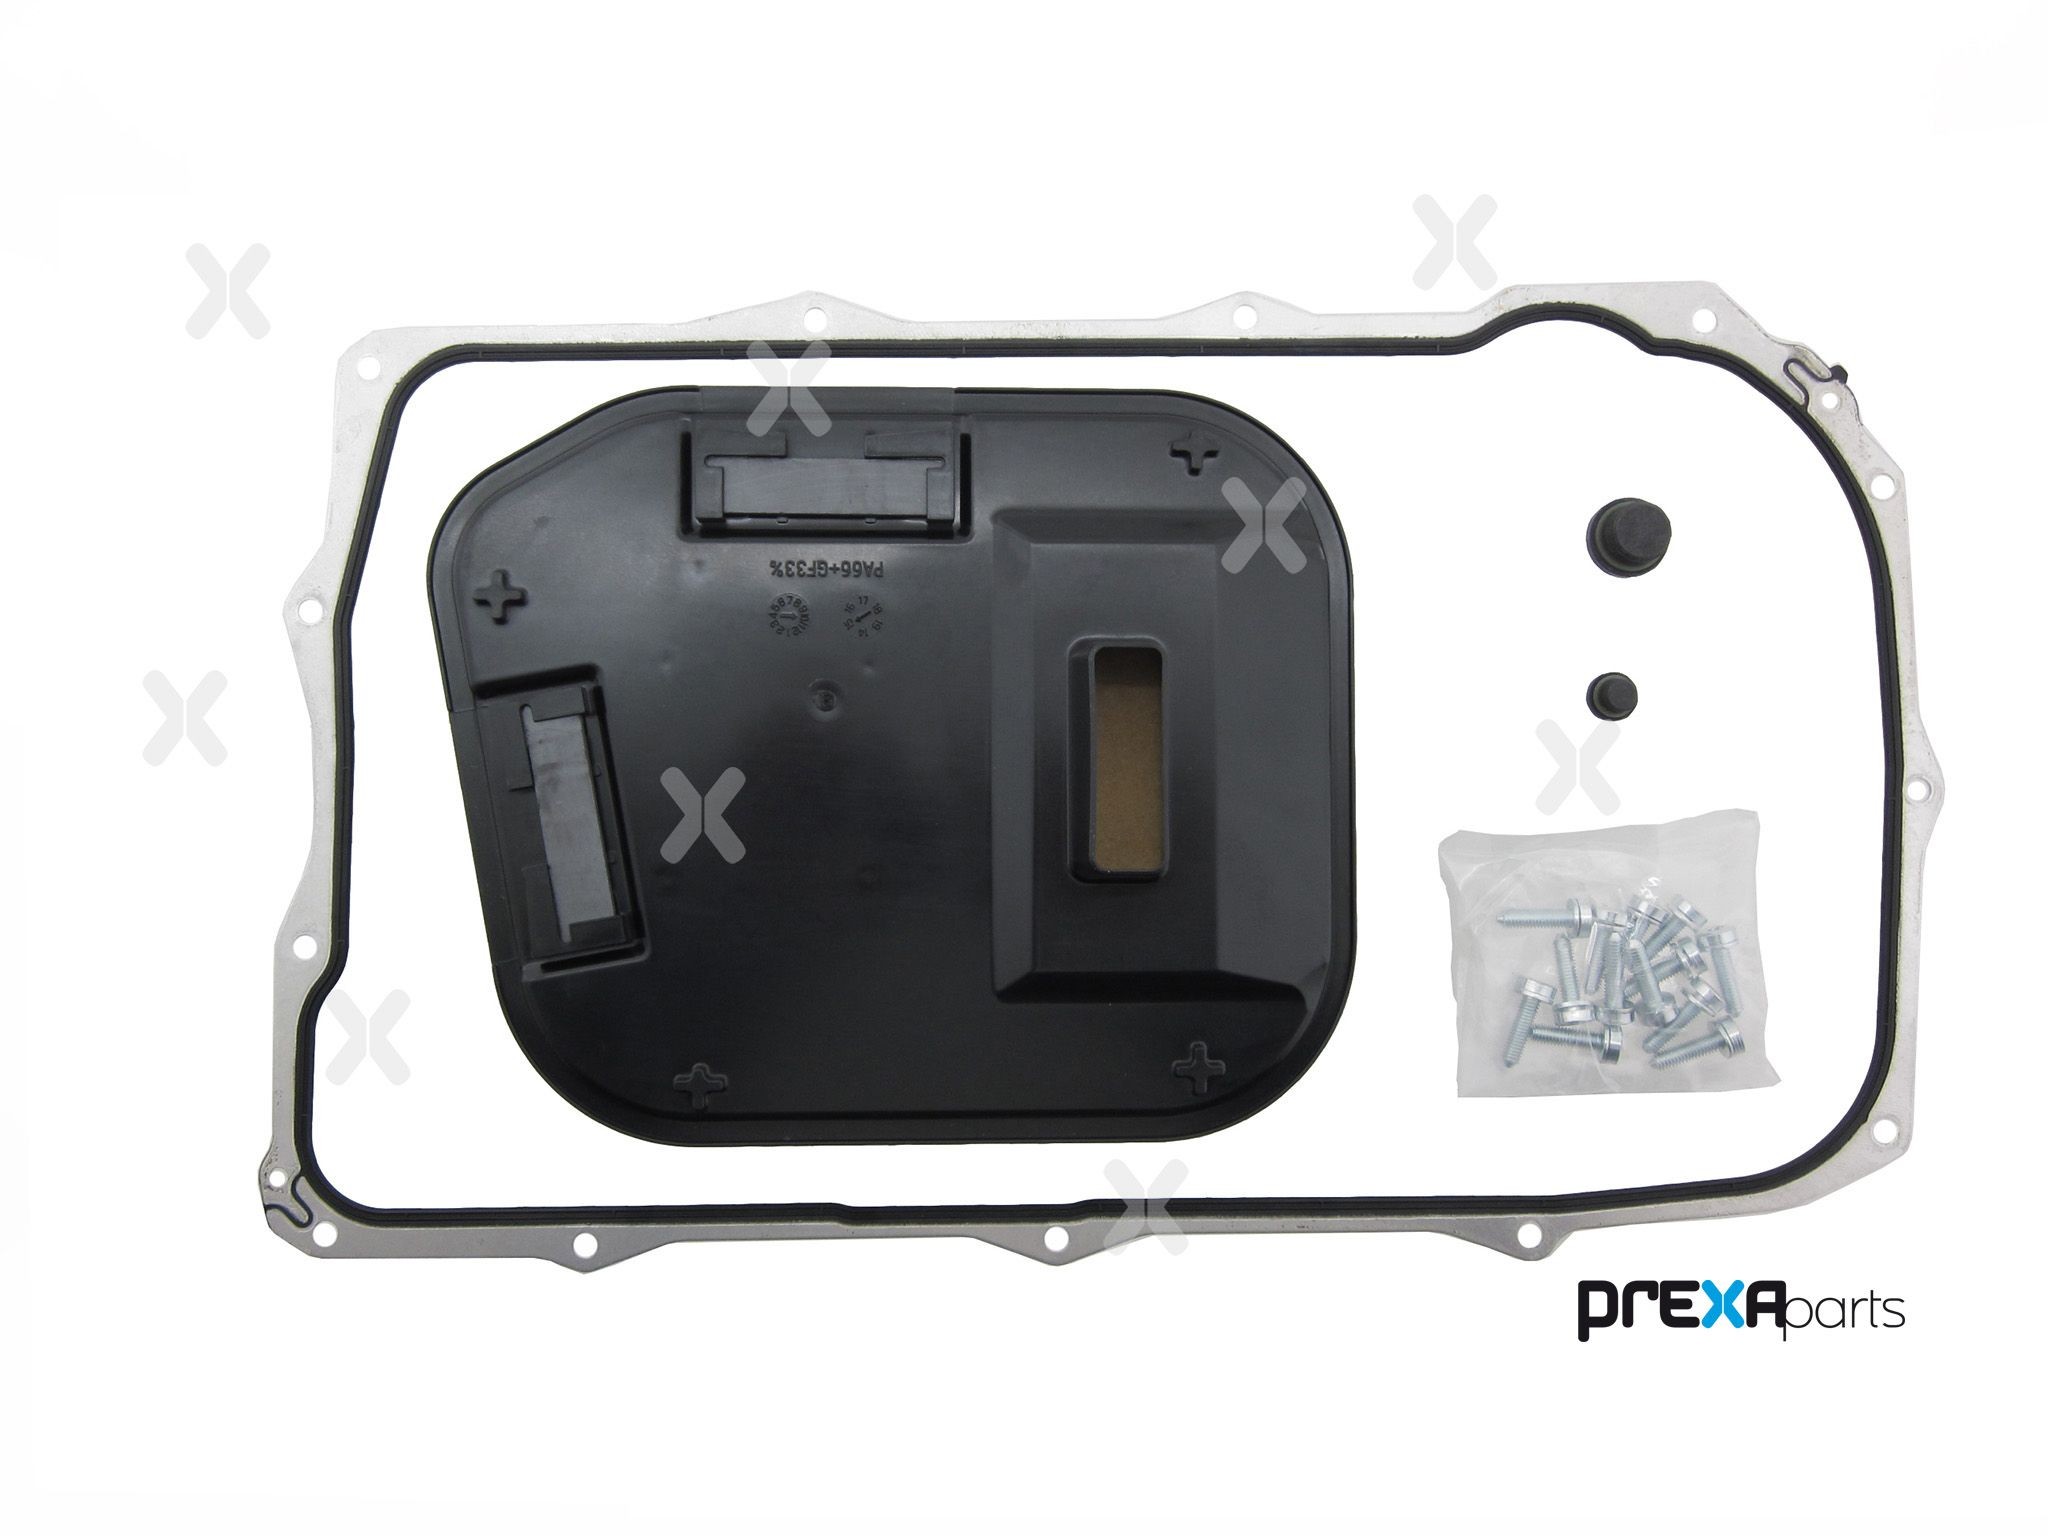 PREXAparts | Getriebefilter P120087 für VW Amarok 2H